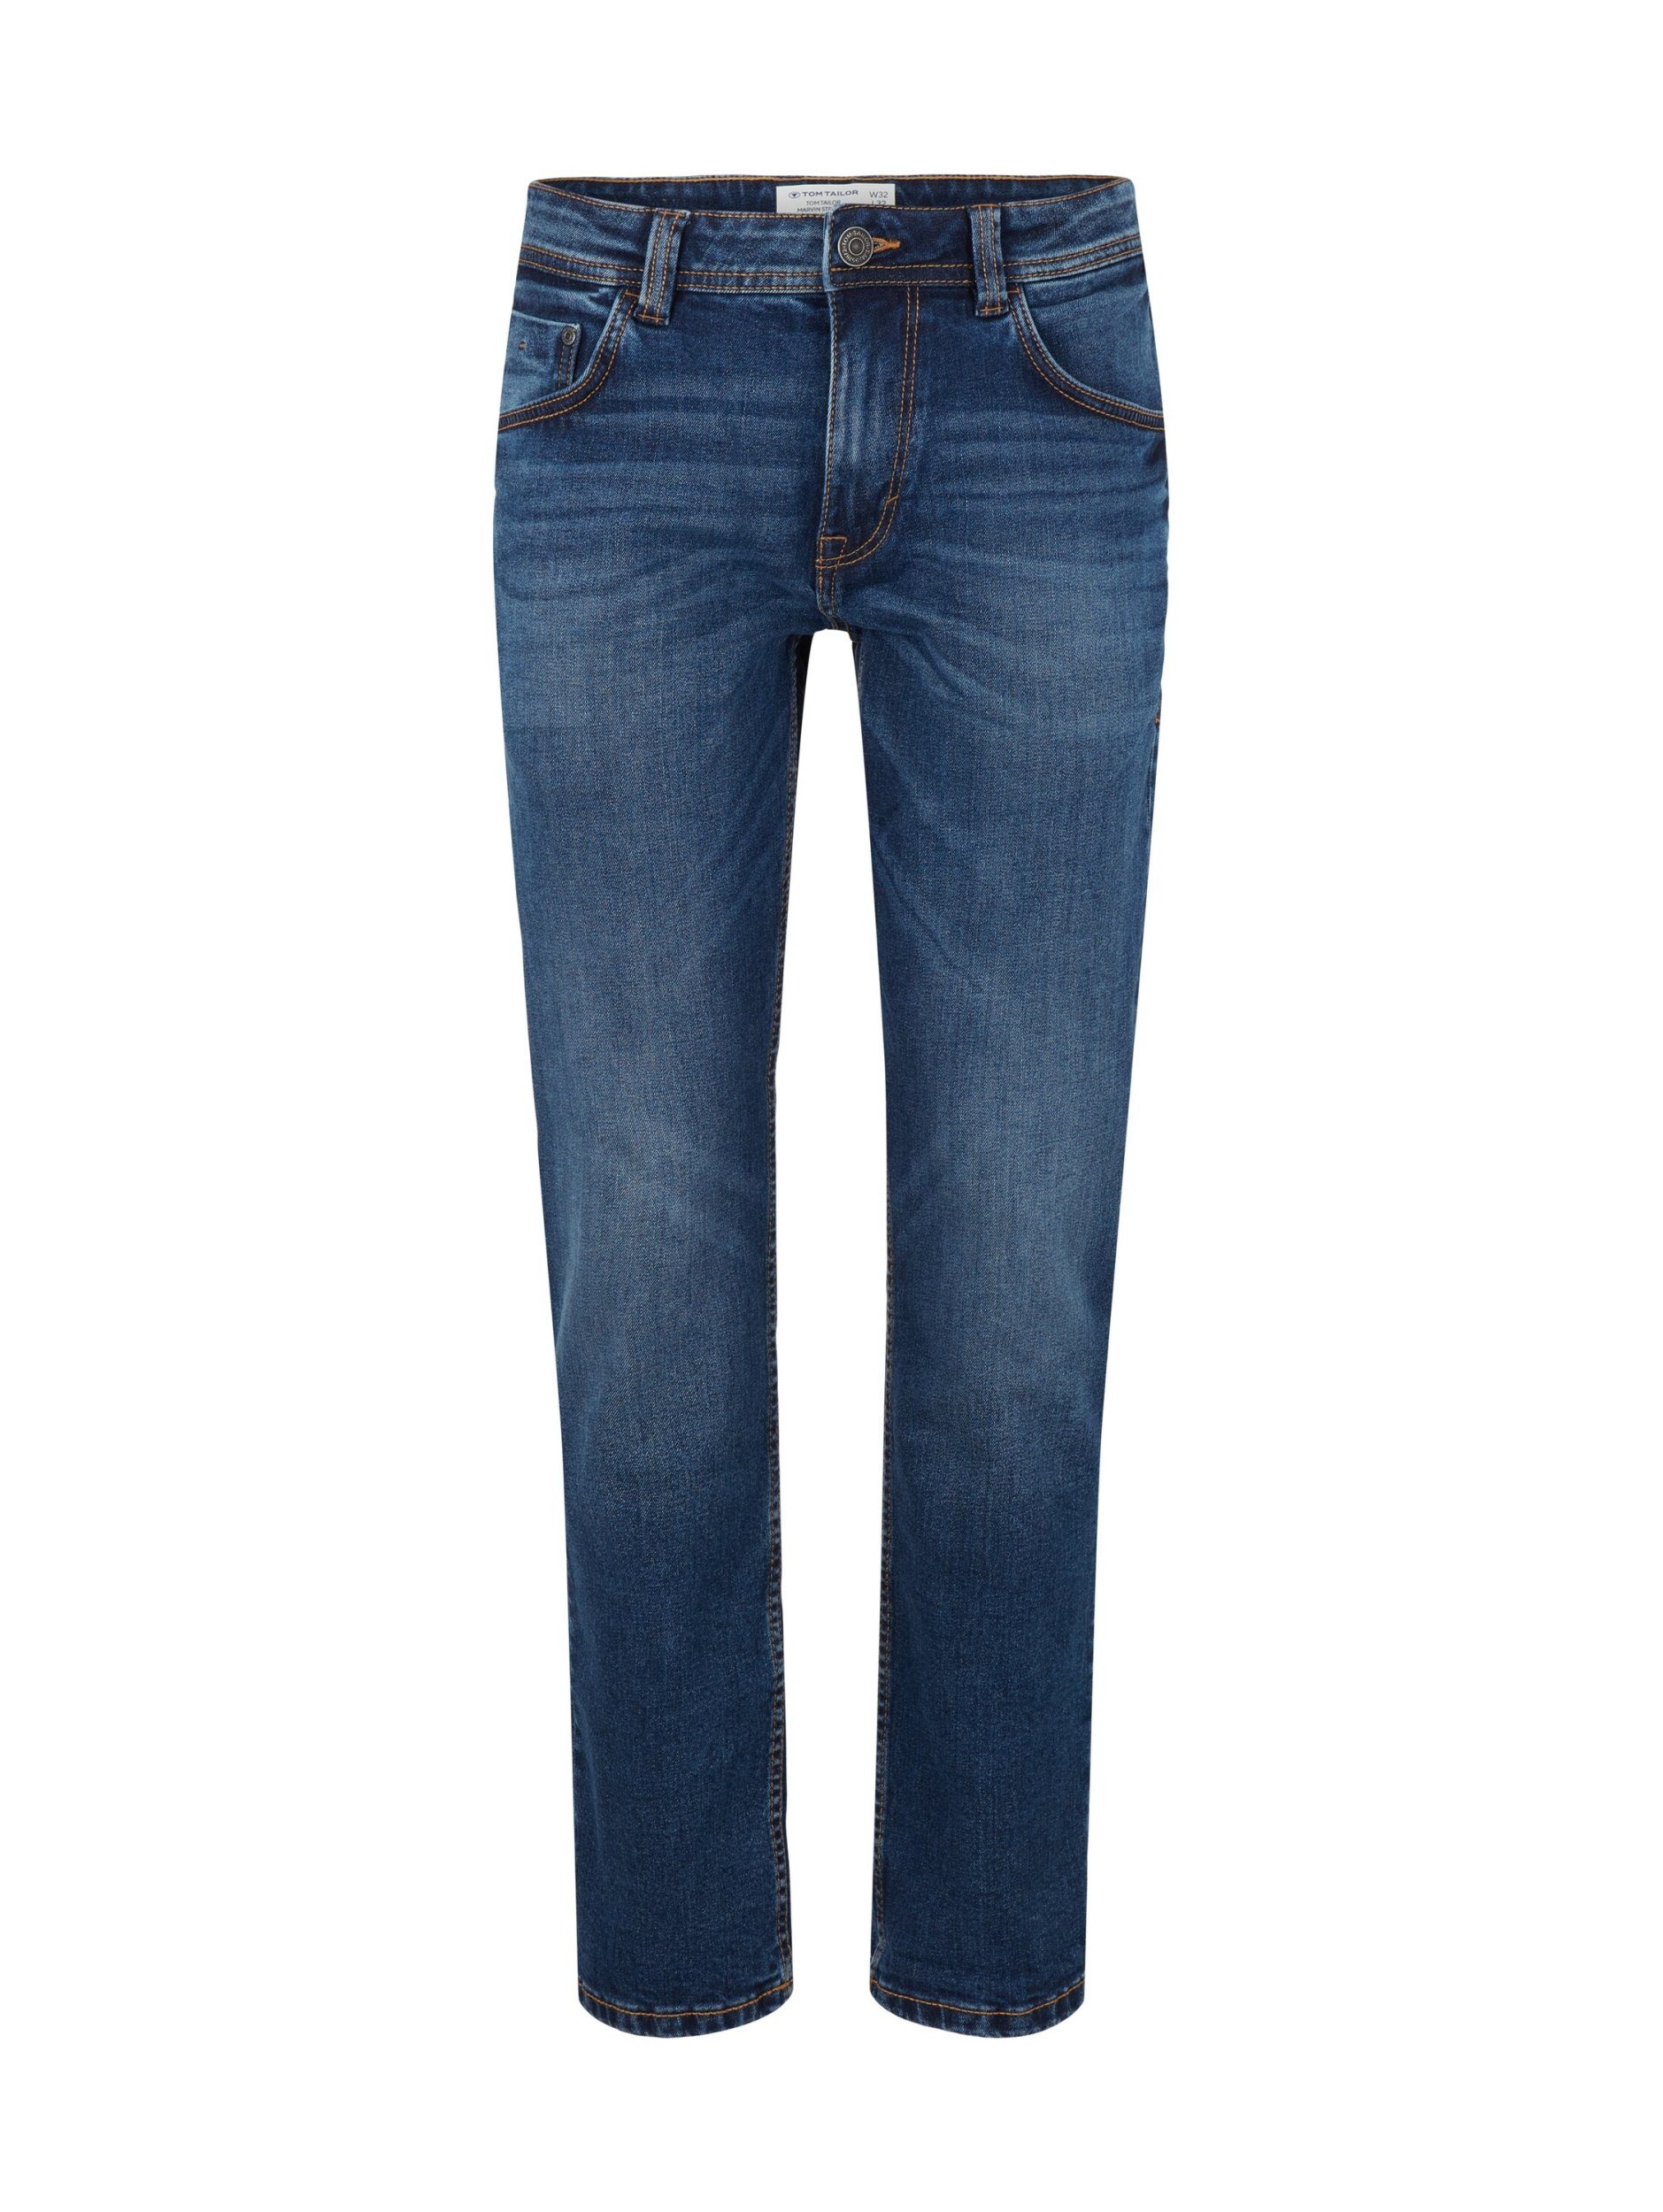 Tailor TOM 5-Pocket-Jeans Marvin Tom blau TAILOR